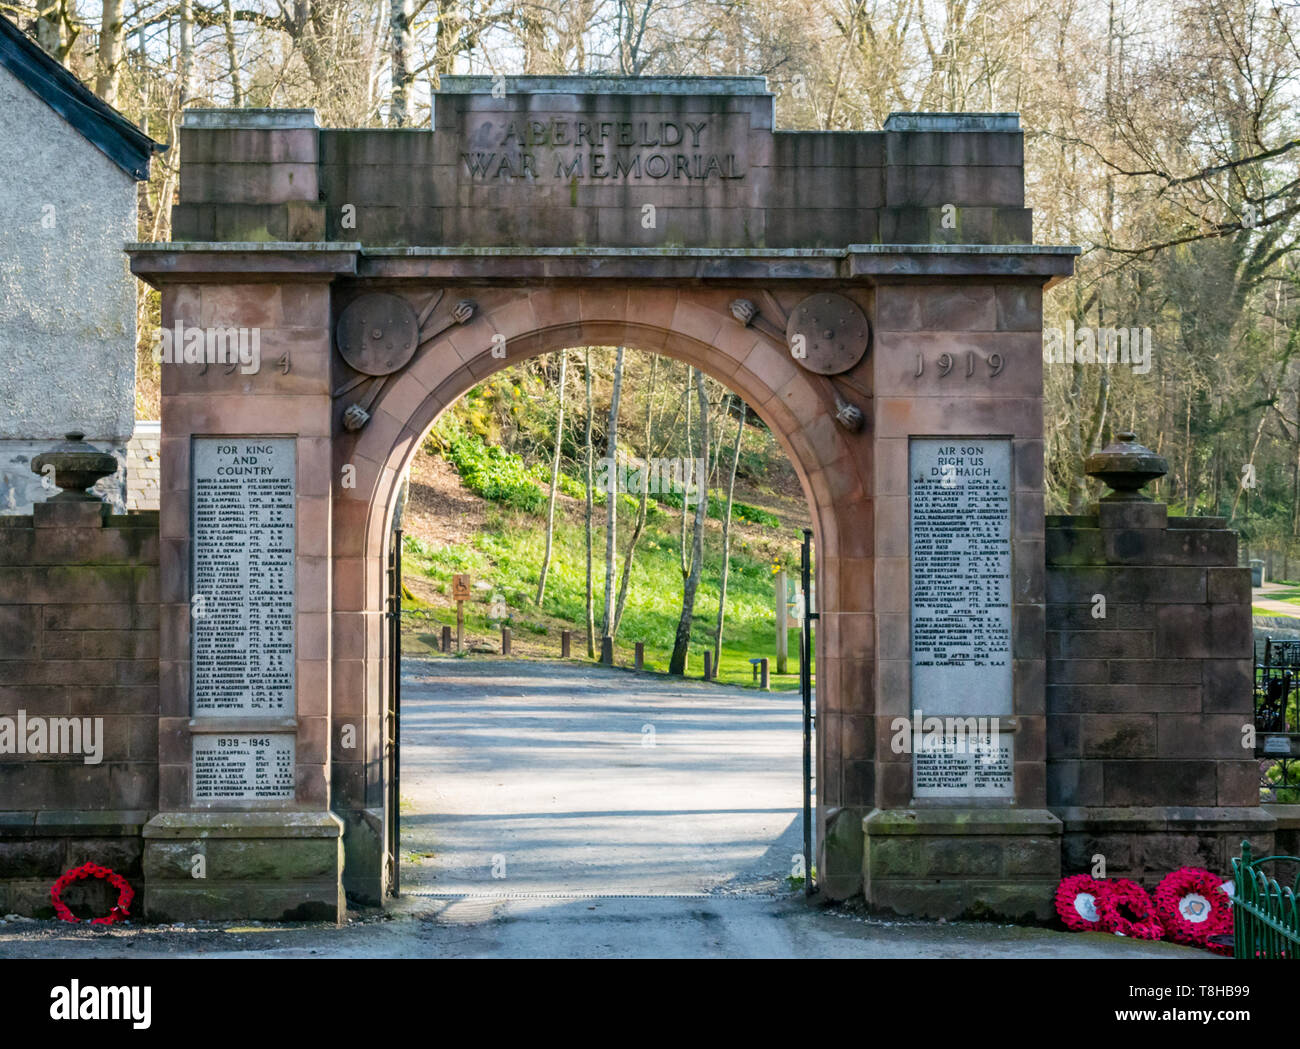 Aberfeldy war memorial stone gate avec liste des morts, Perthshire, Écosse, Royaume-Uni Banque D'Images